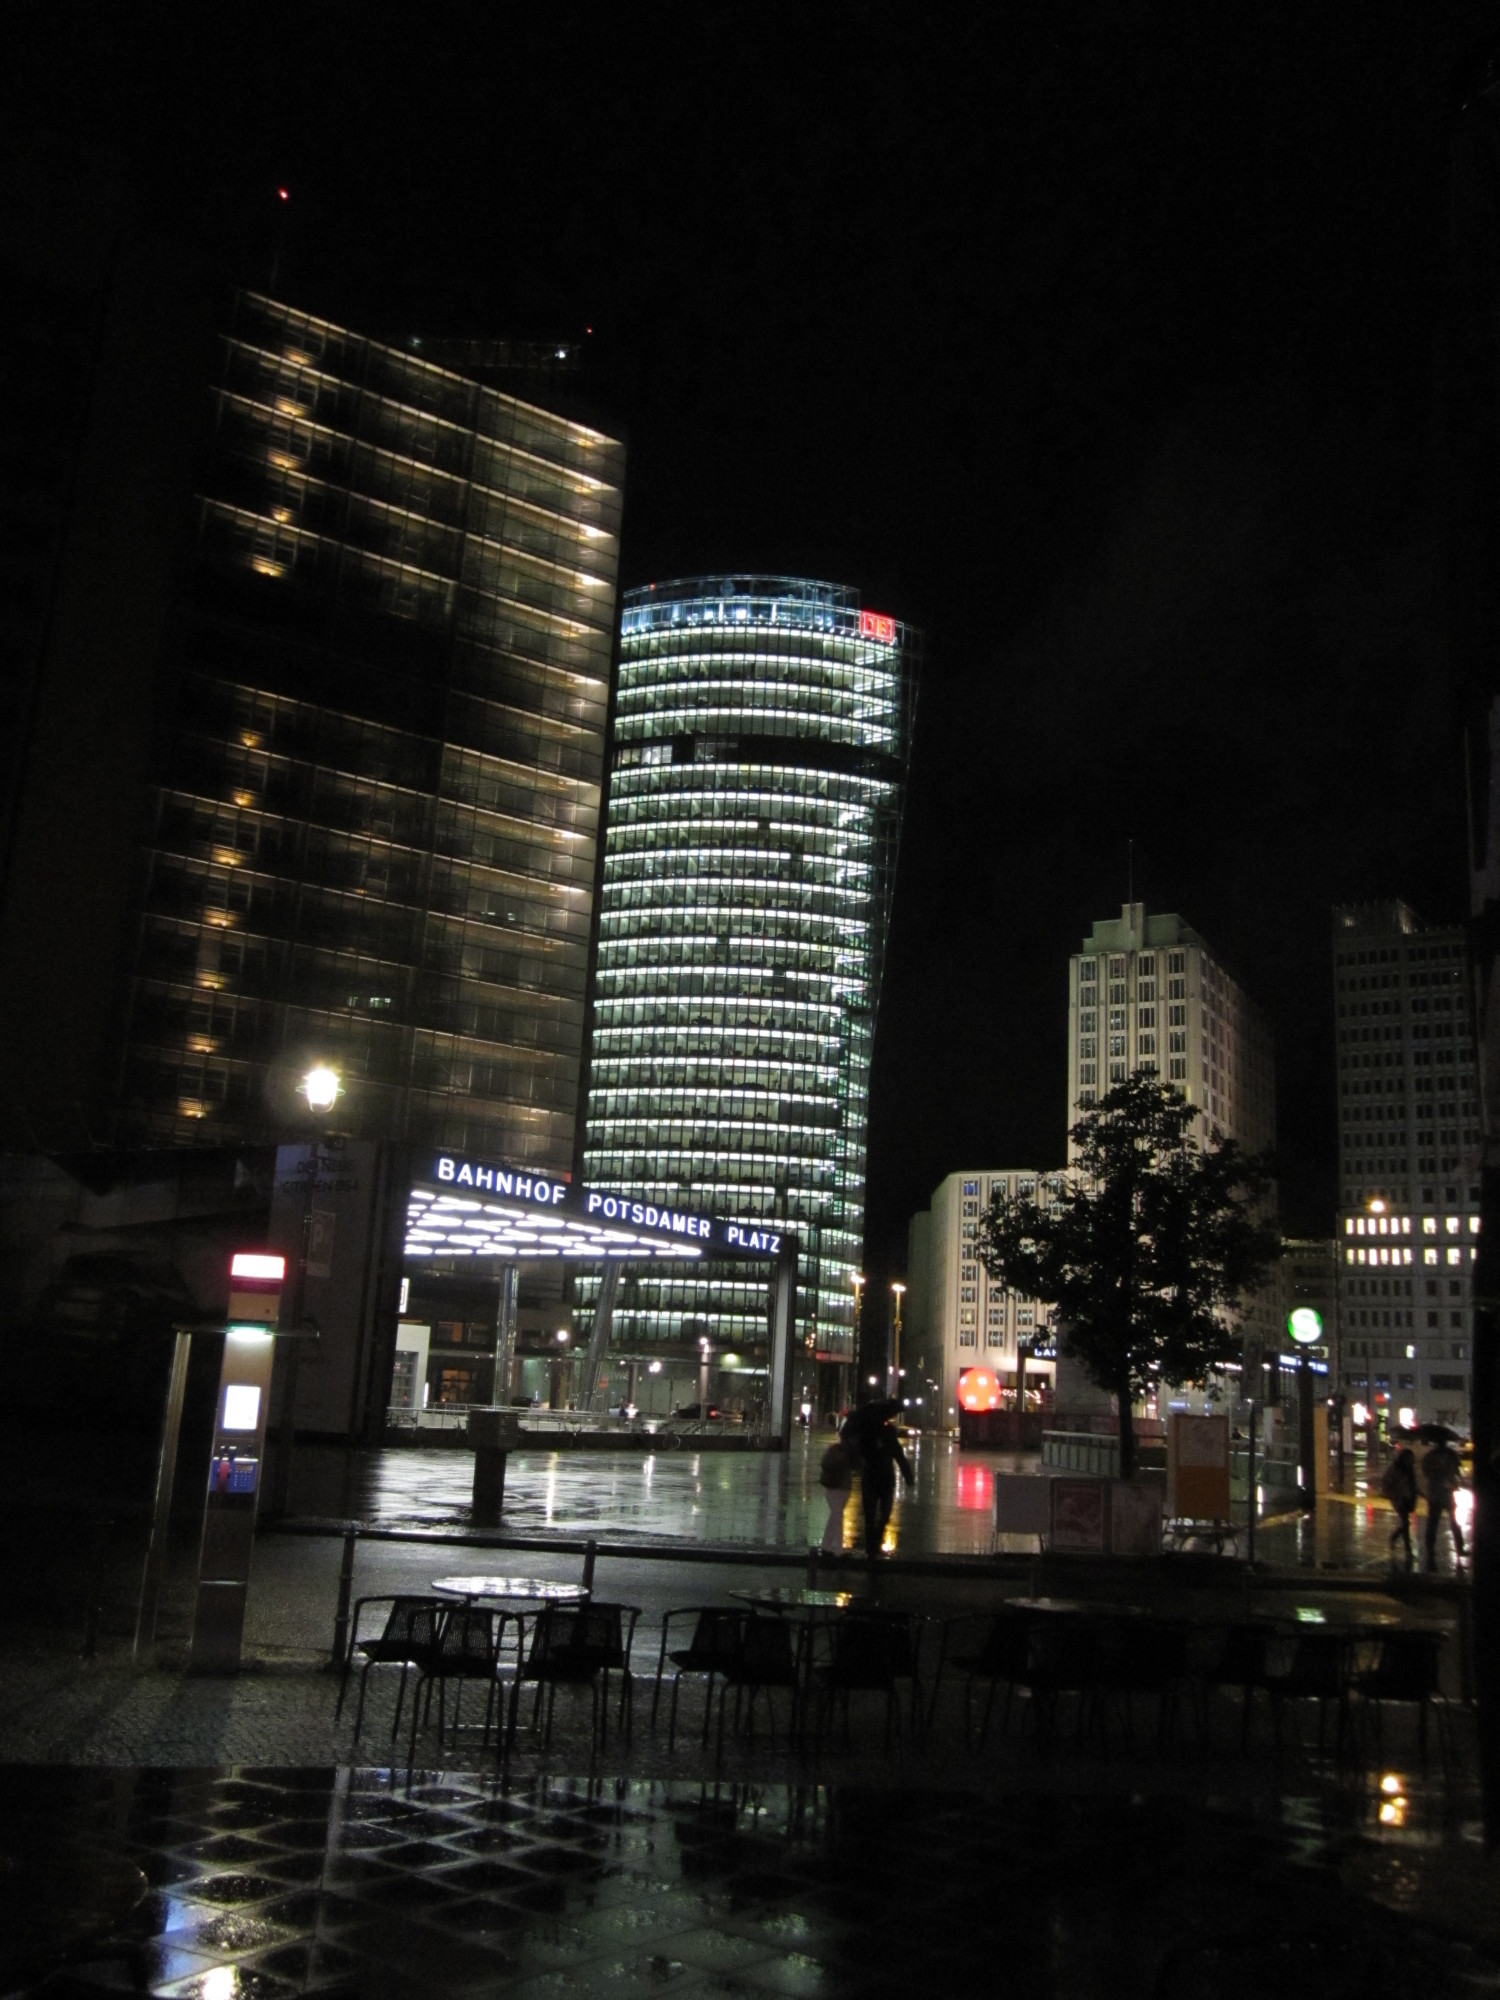 Potsdamerplatz by night